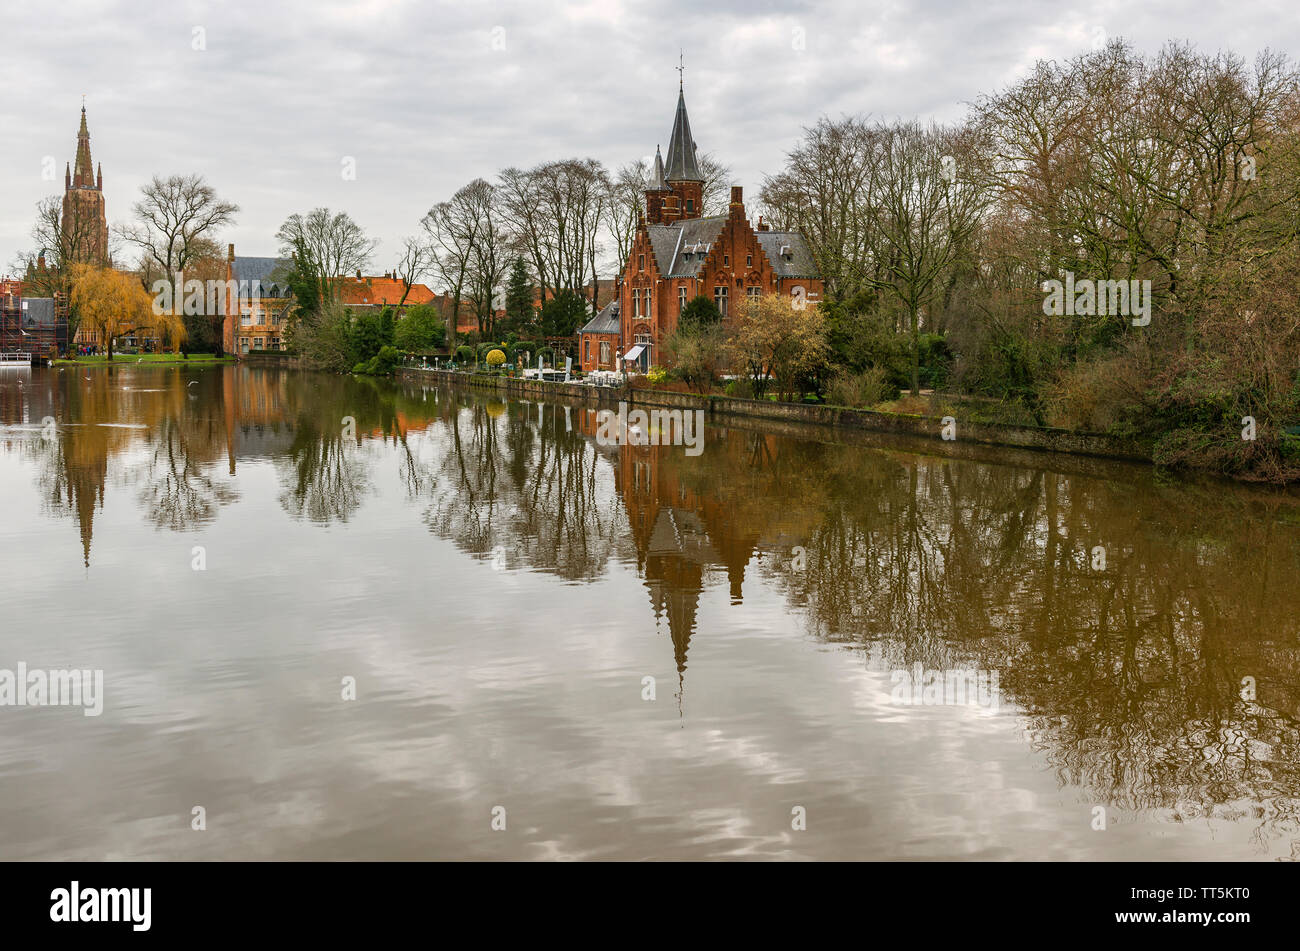 Le lac Minnewater ou lac d'amour, dans le centre-ville de Bruges et le reflet d'un château médiéval et l'église Notre Dame, Flandre occidentale, Belgique. Banque D'Images